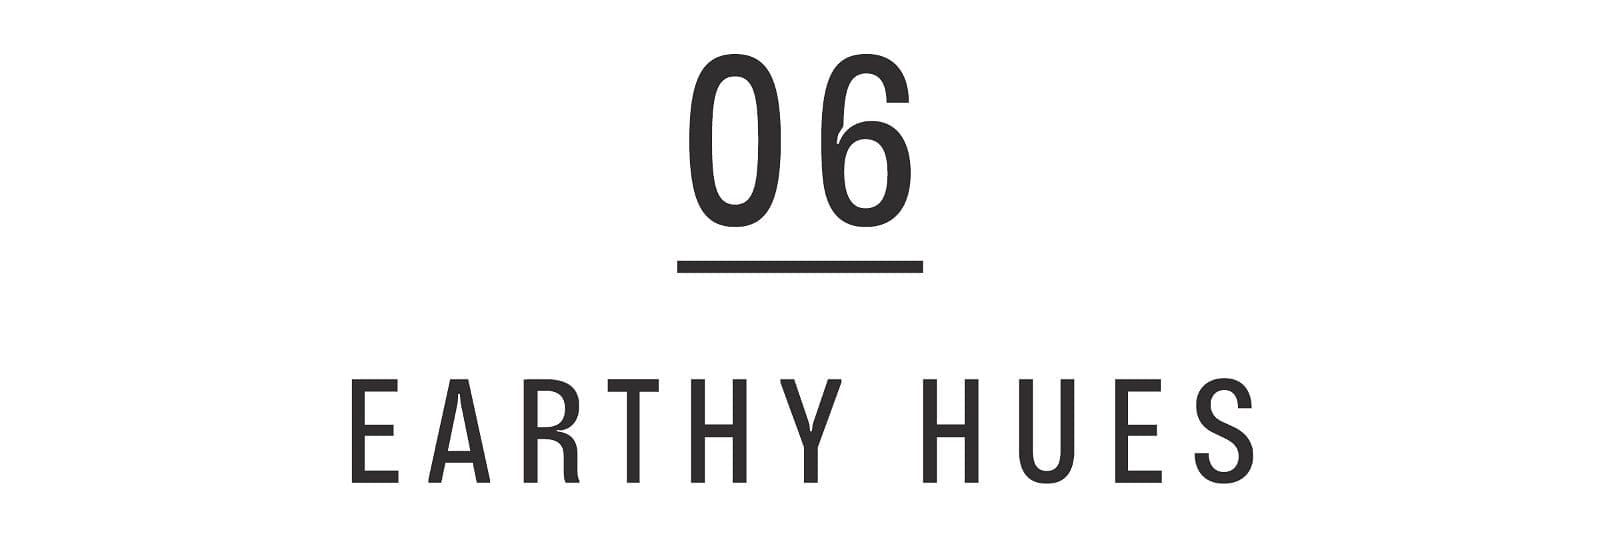 06 EARTHY HUES